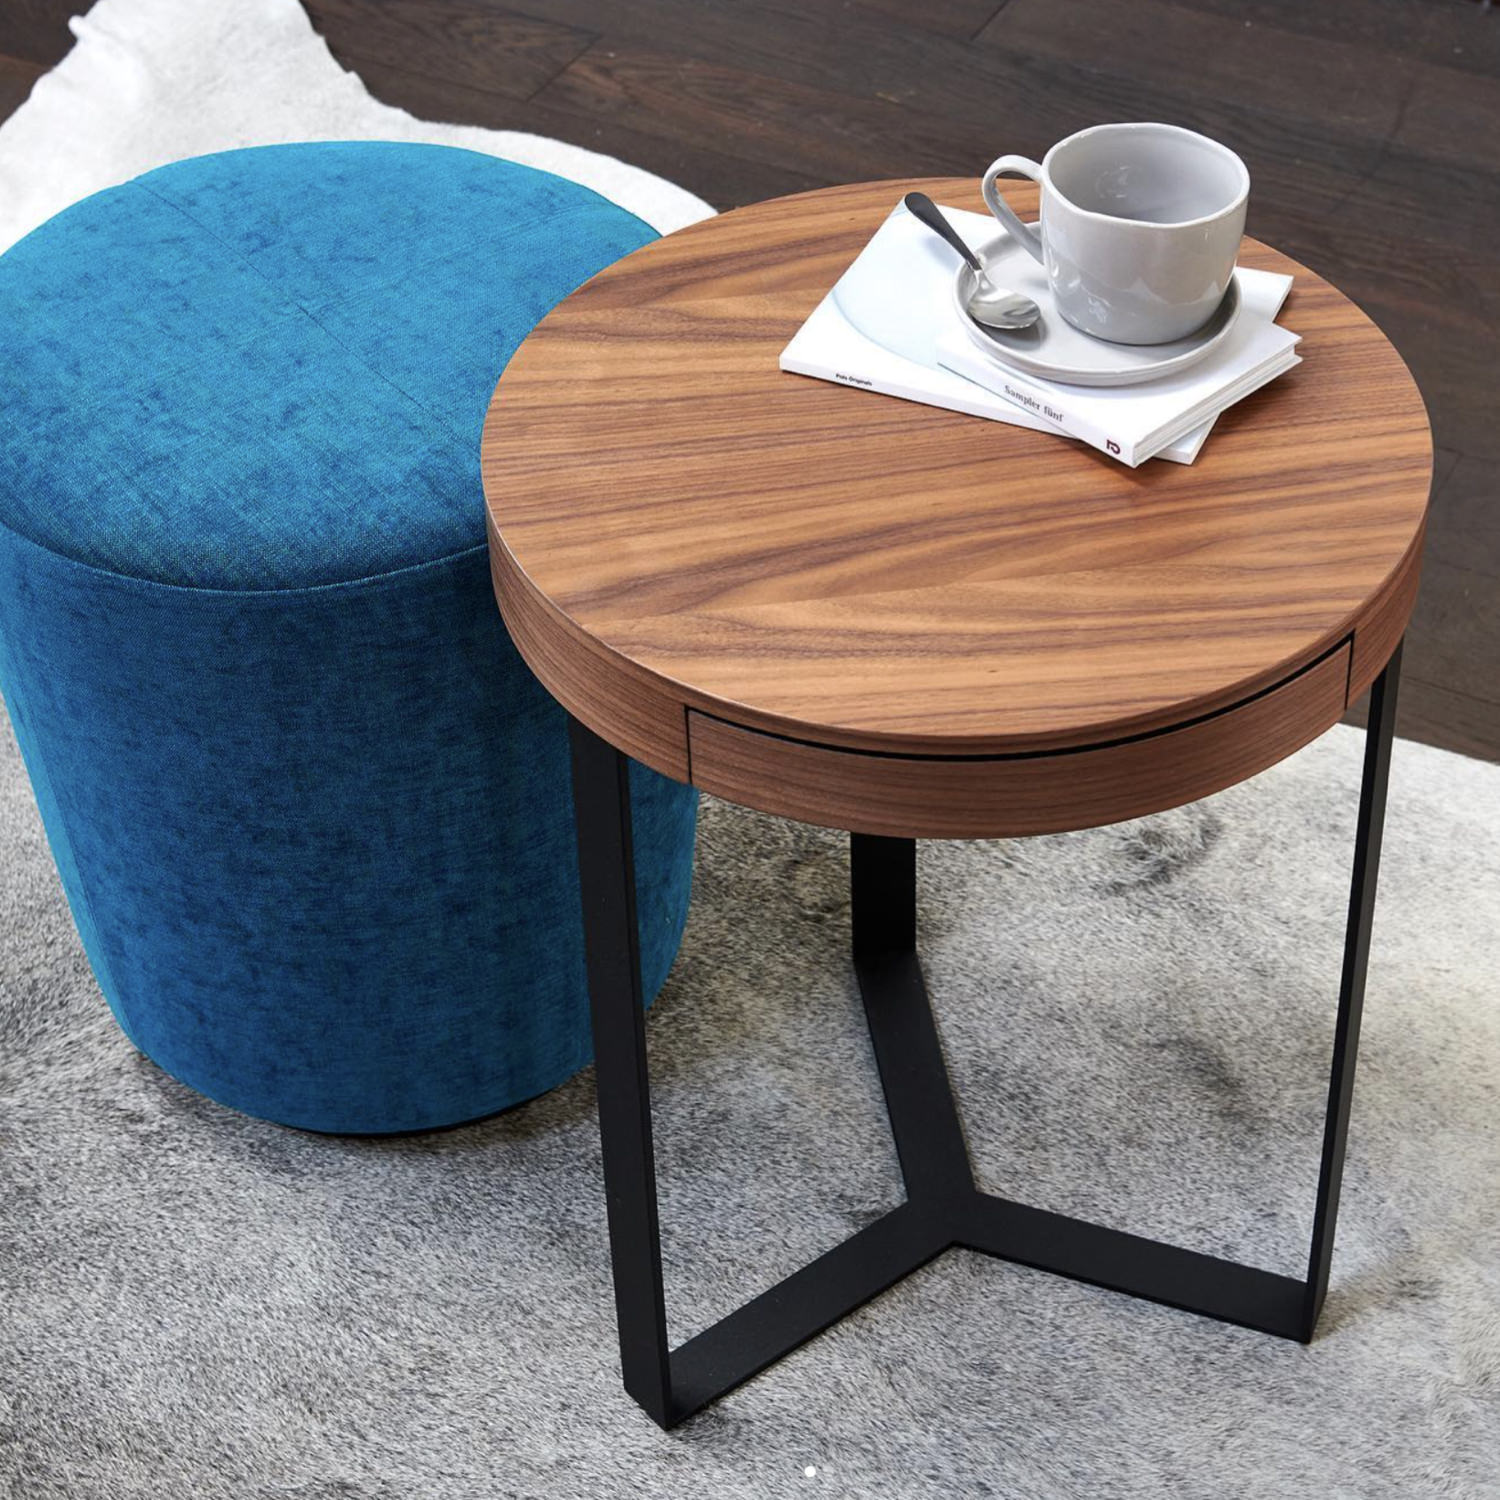 Designer Furniture UK, Lambert furniture UK